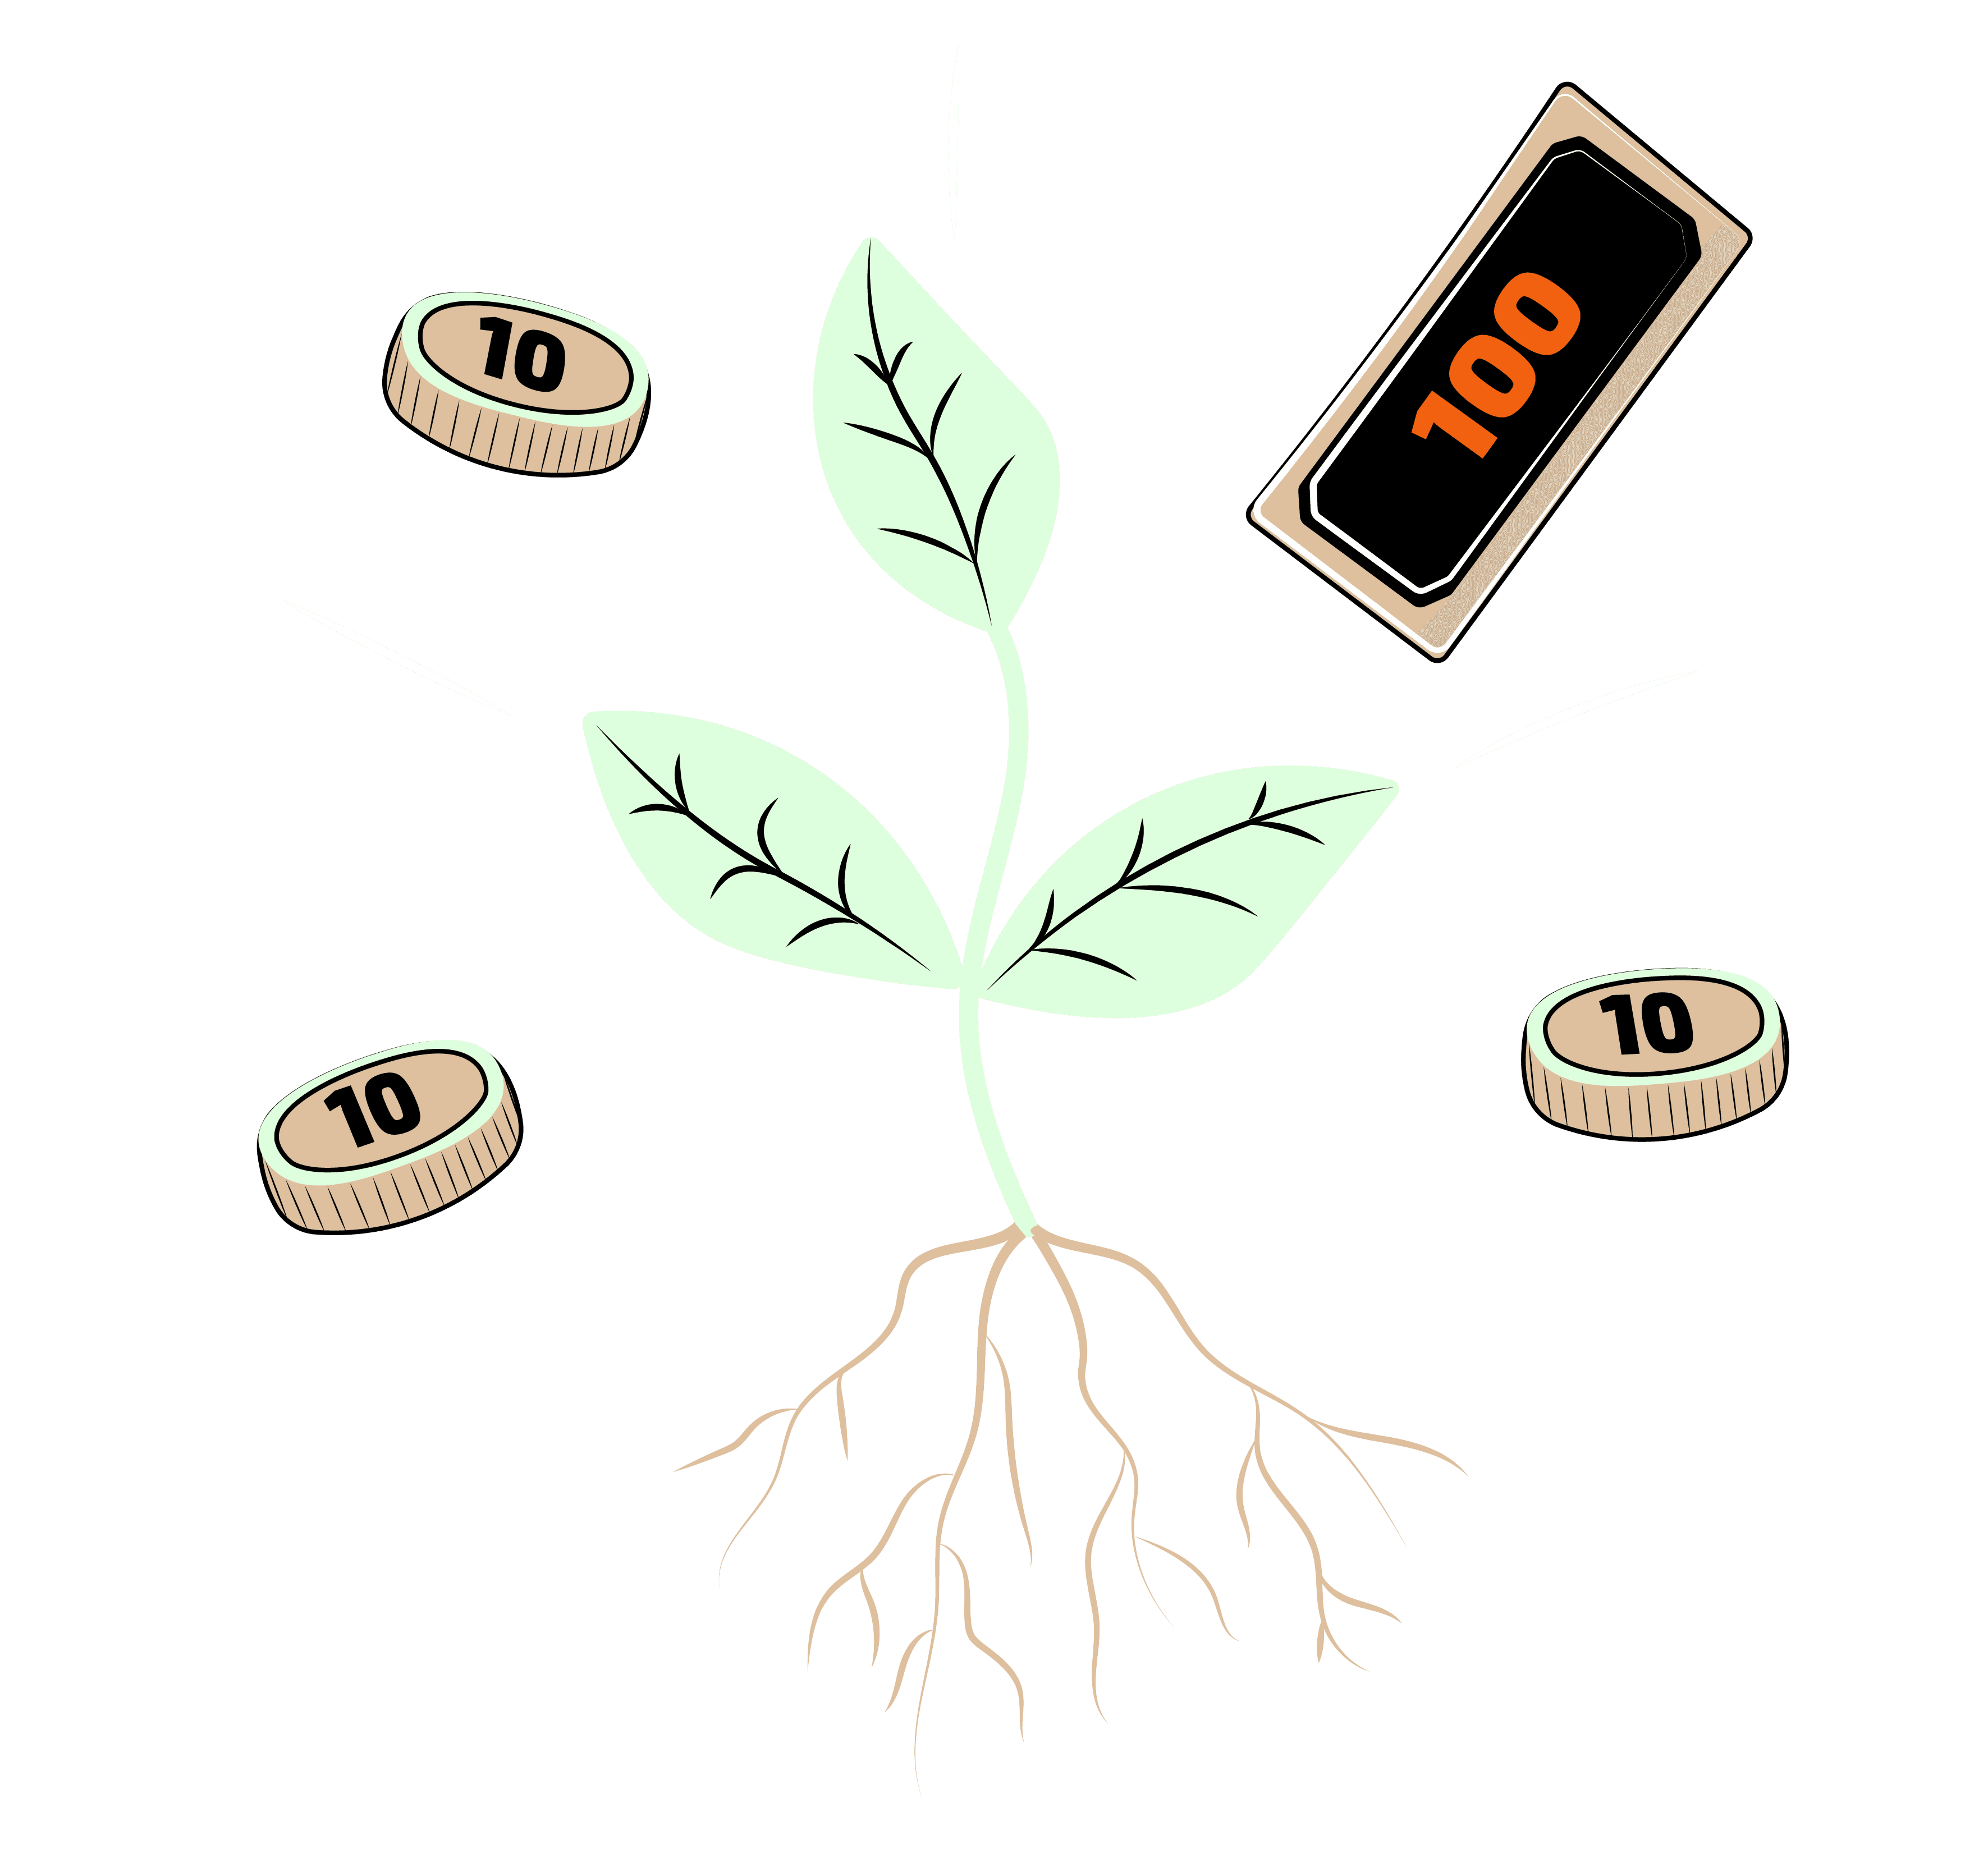 Växt som gror som symboliserar ett växande företag.